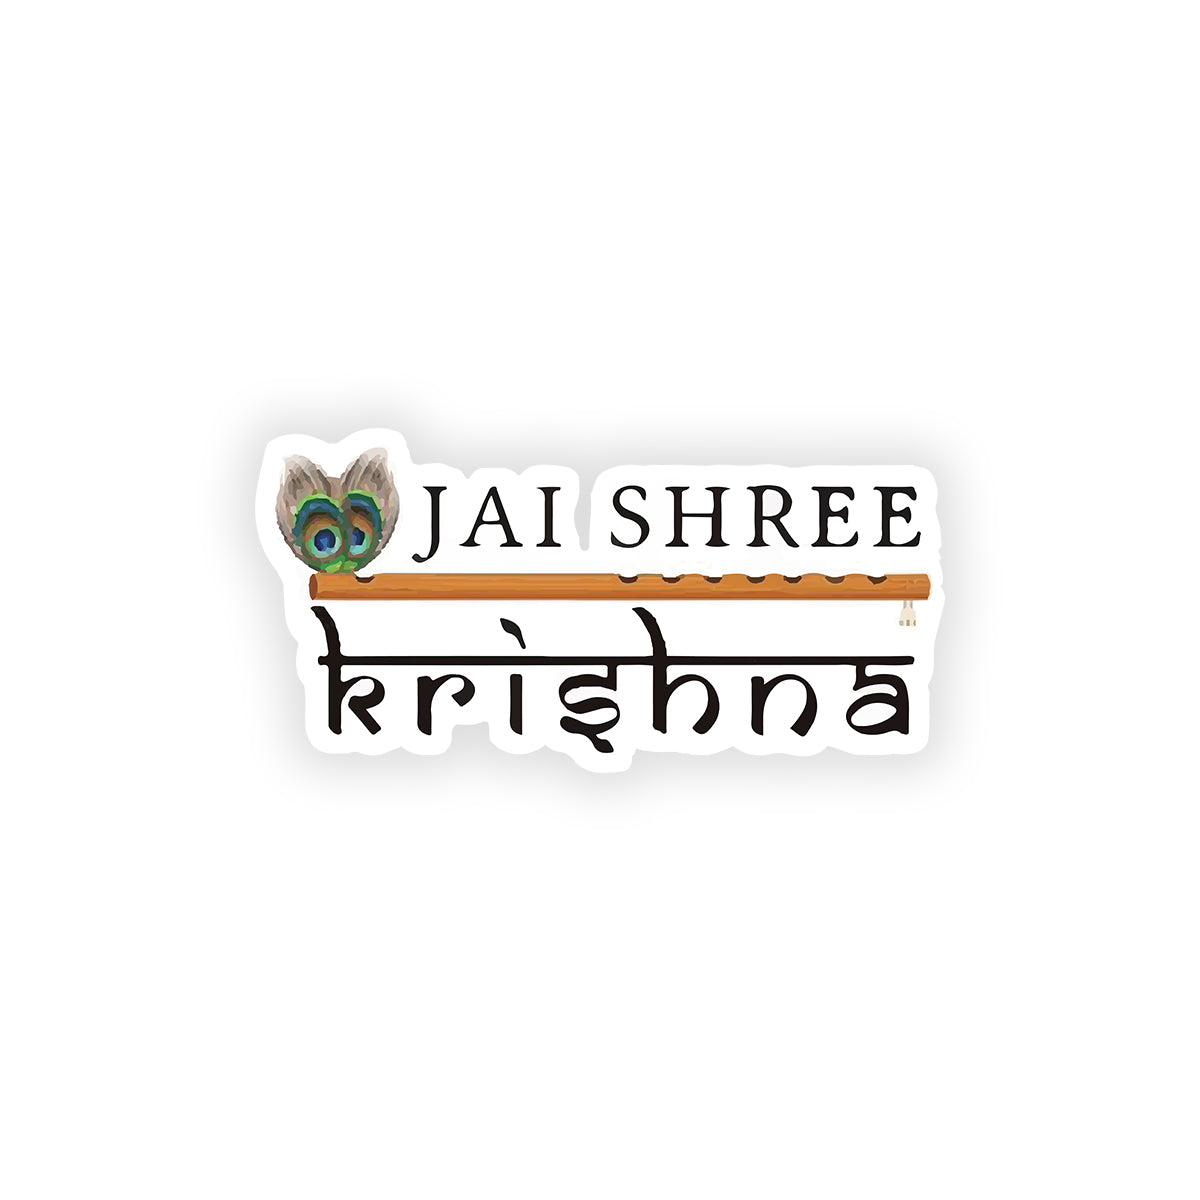 Jay shree krishna